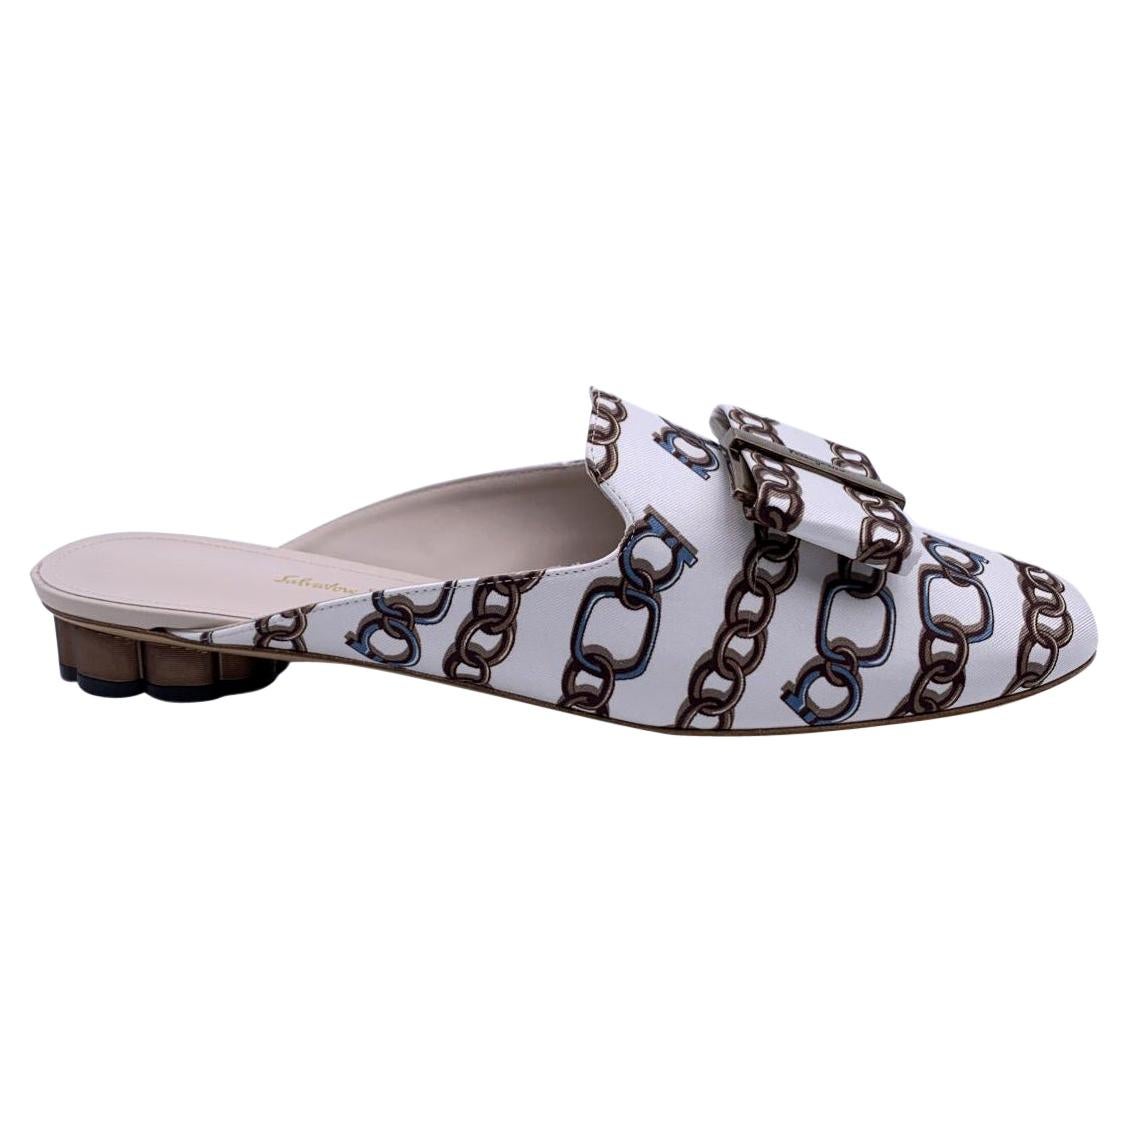 Salvatore Ferragamo White Chain Sciacca Twill Shoes Size US 8C EU 38.5